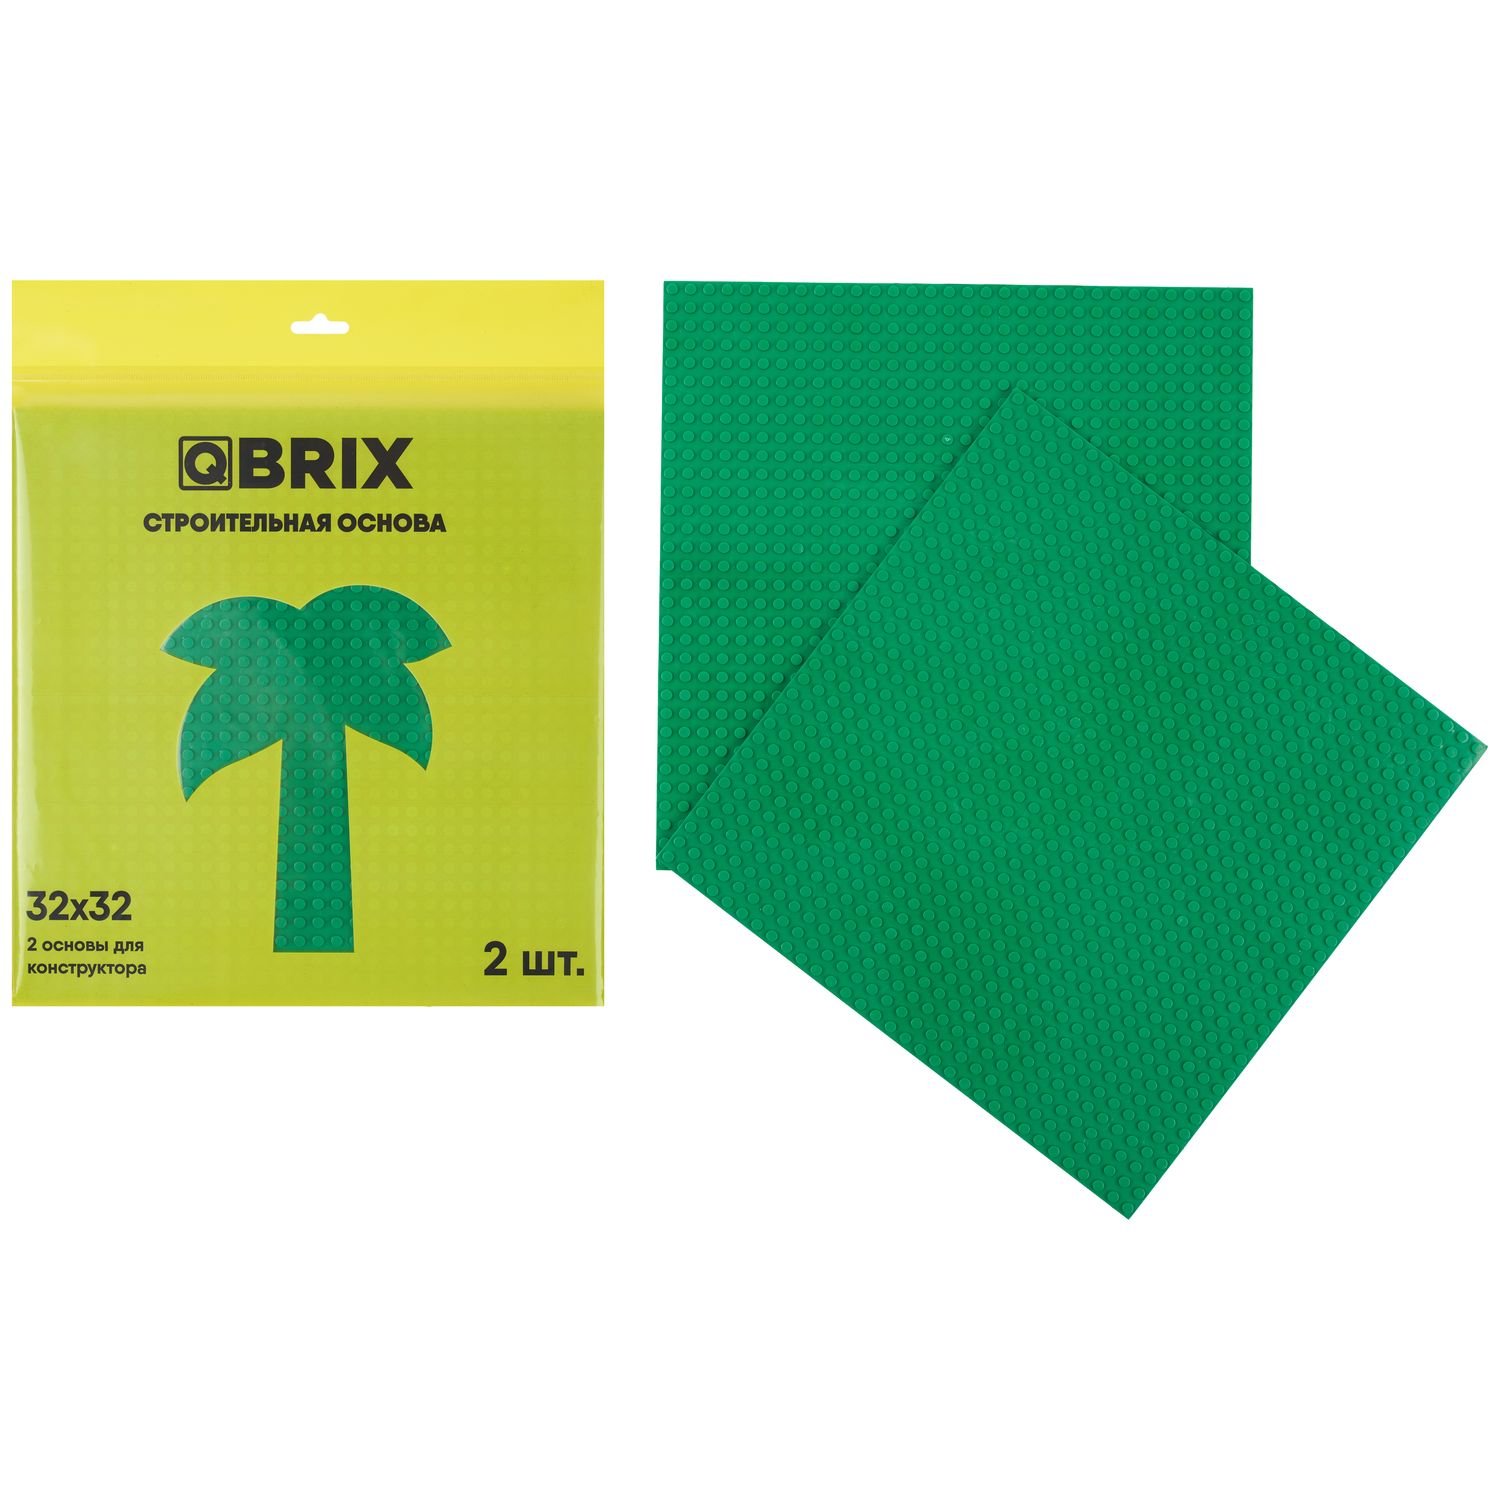 Строительная пластина QBRIX (набор из 2-х штук), цвет: зелёный QBRIX10001 пластина основа строительная платформа для конструктора bauer зеленая 2 шт 967